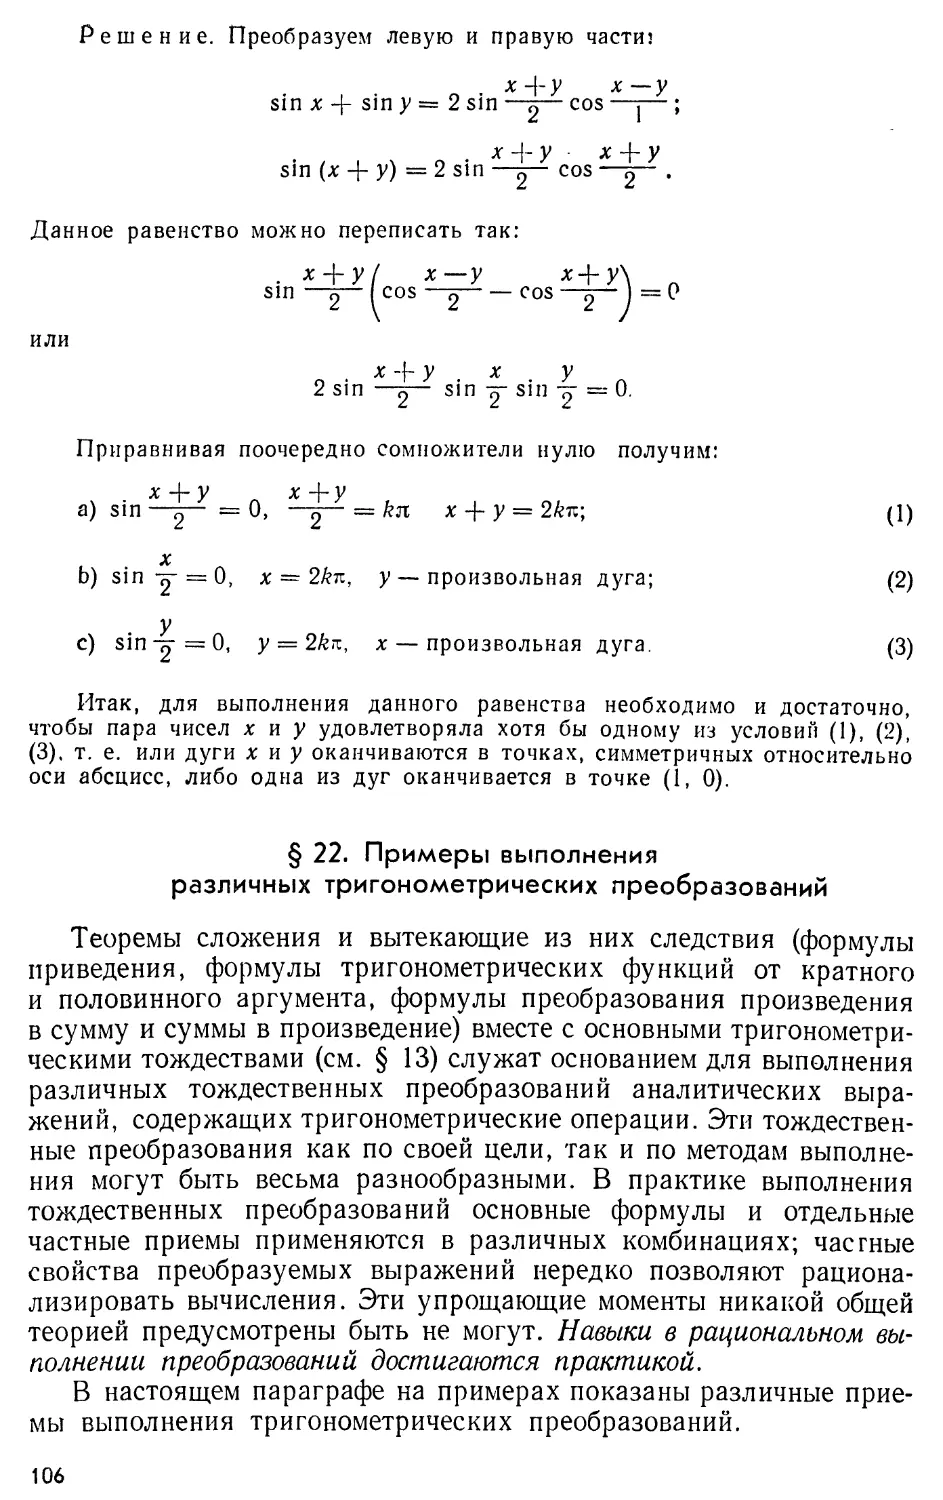 § 22. Примеры выполнения различных тригонометрических преобразований